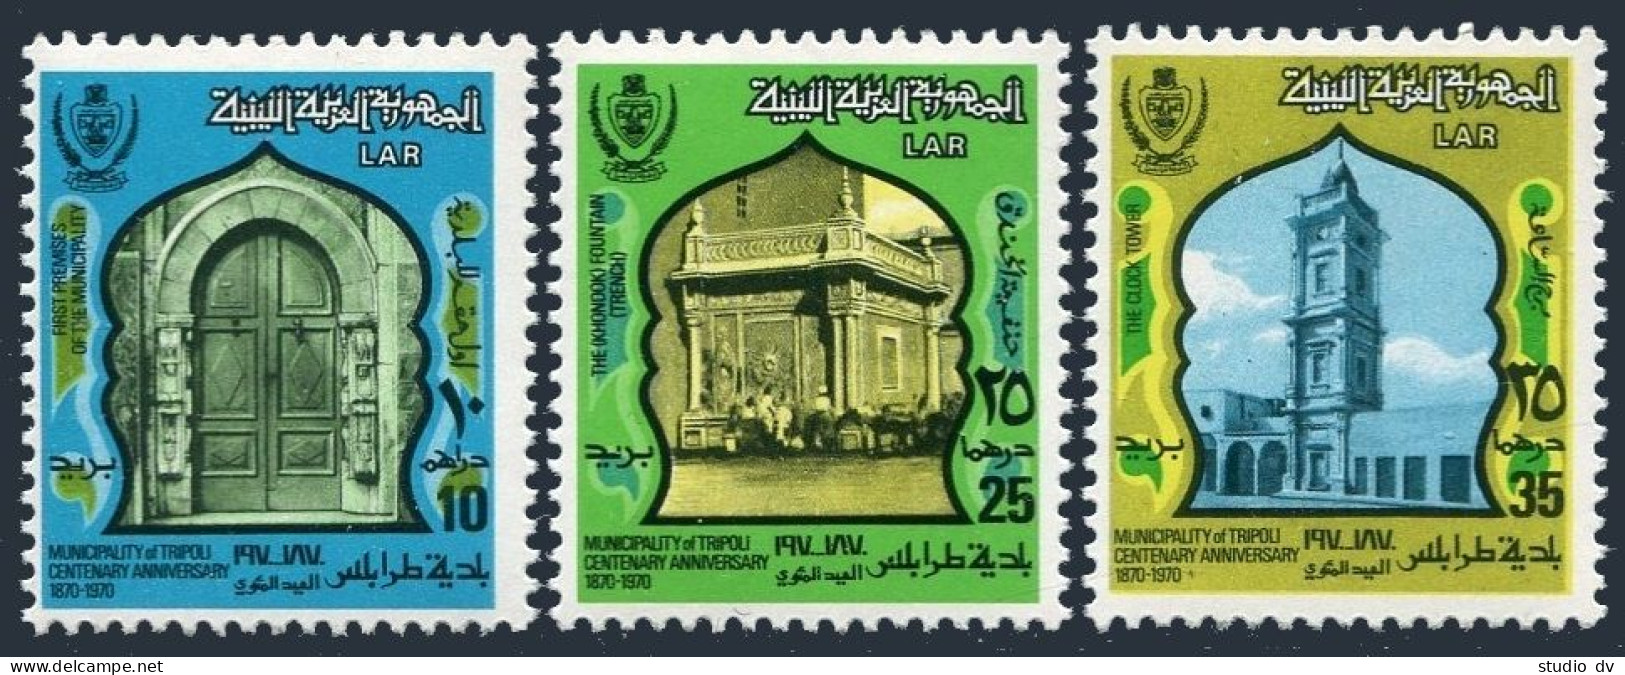 Libya 514-516, MNH. Michel 430-432. Tripoli As A Municipality-100, 1973. - Libye